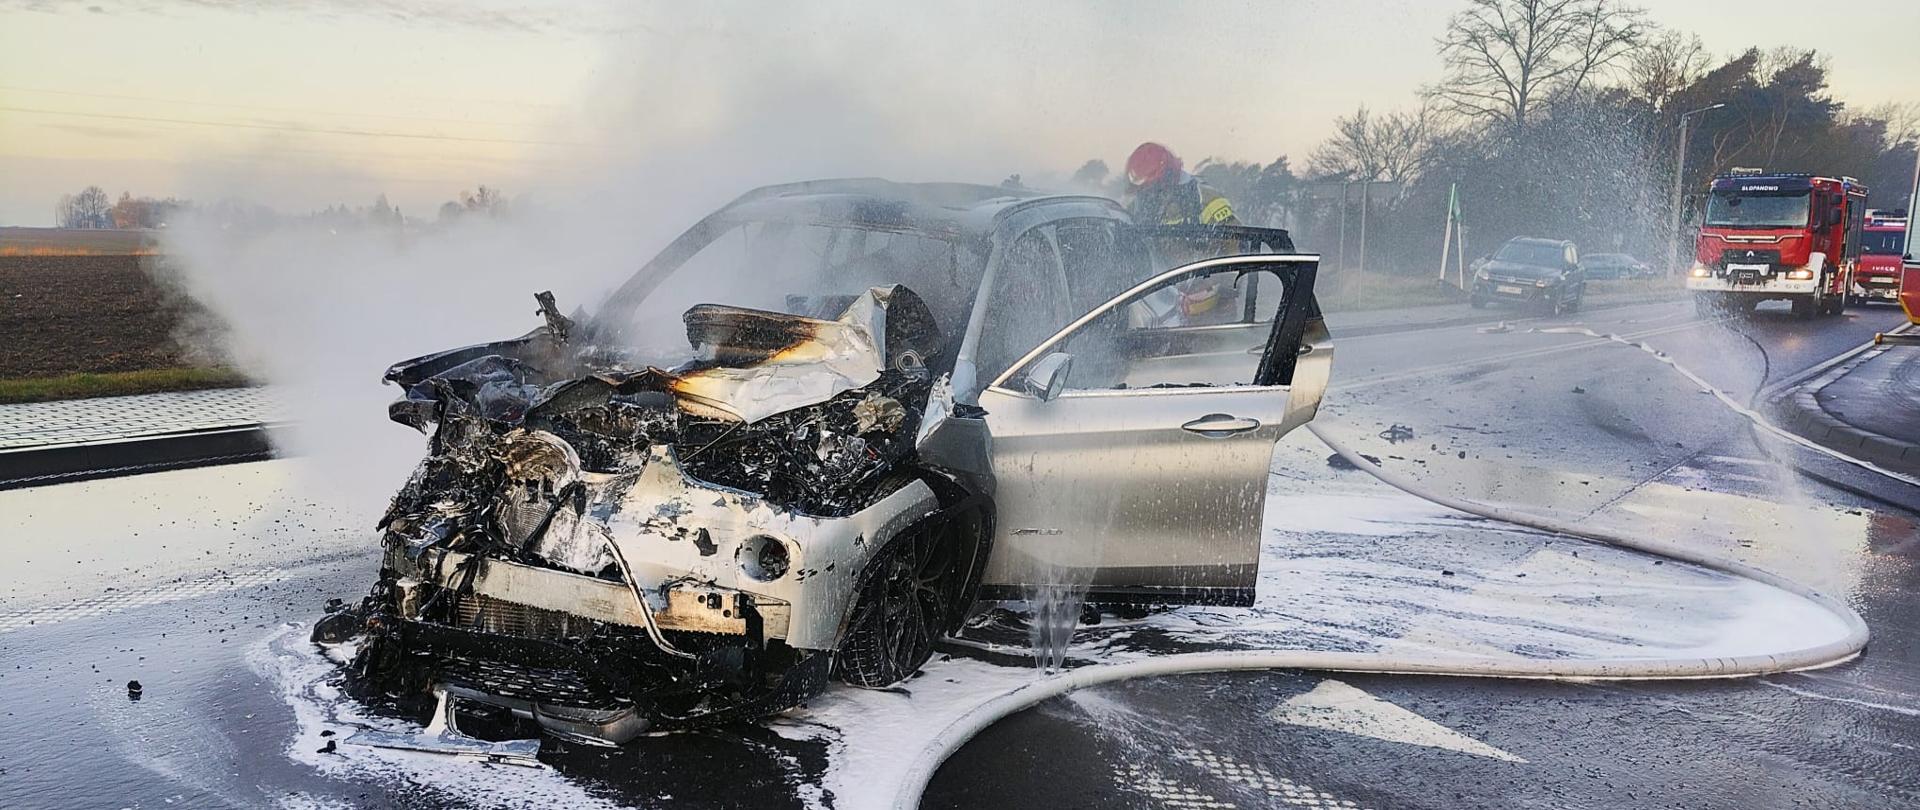 Spalony samochód na drodze, widać dym, strażak go gasi